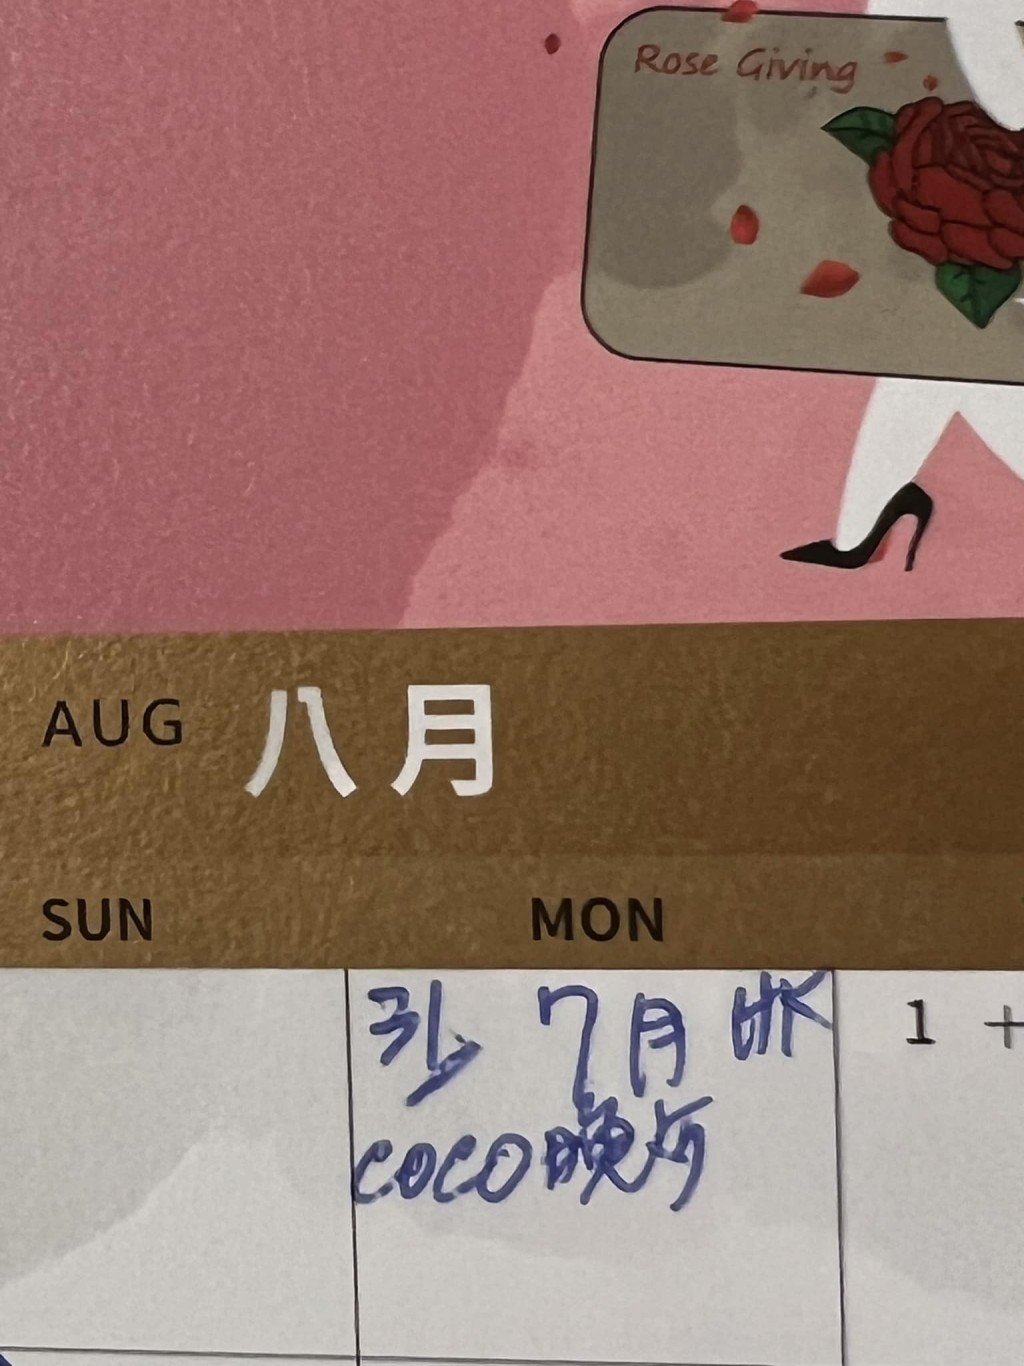 甄妮早前晒出行程表，写上：「7月HK coco晚餐。」曝光原定约了李玟在港见面。